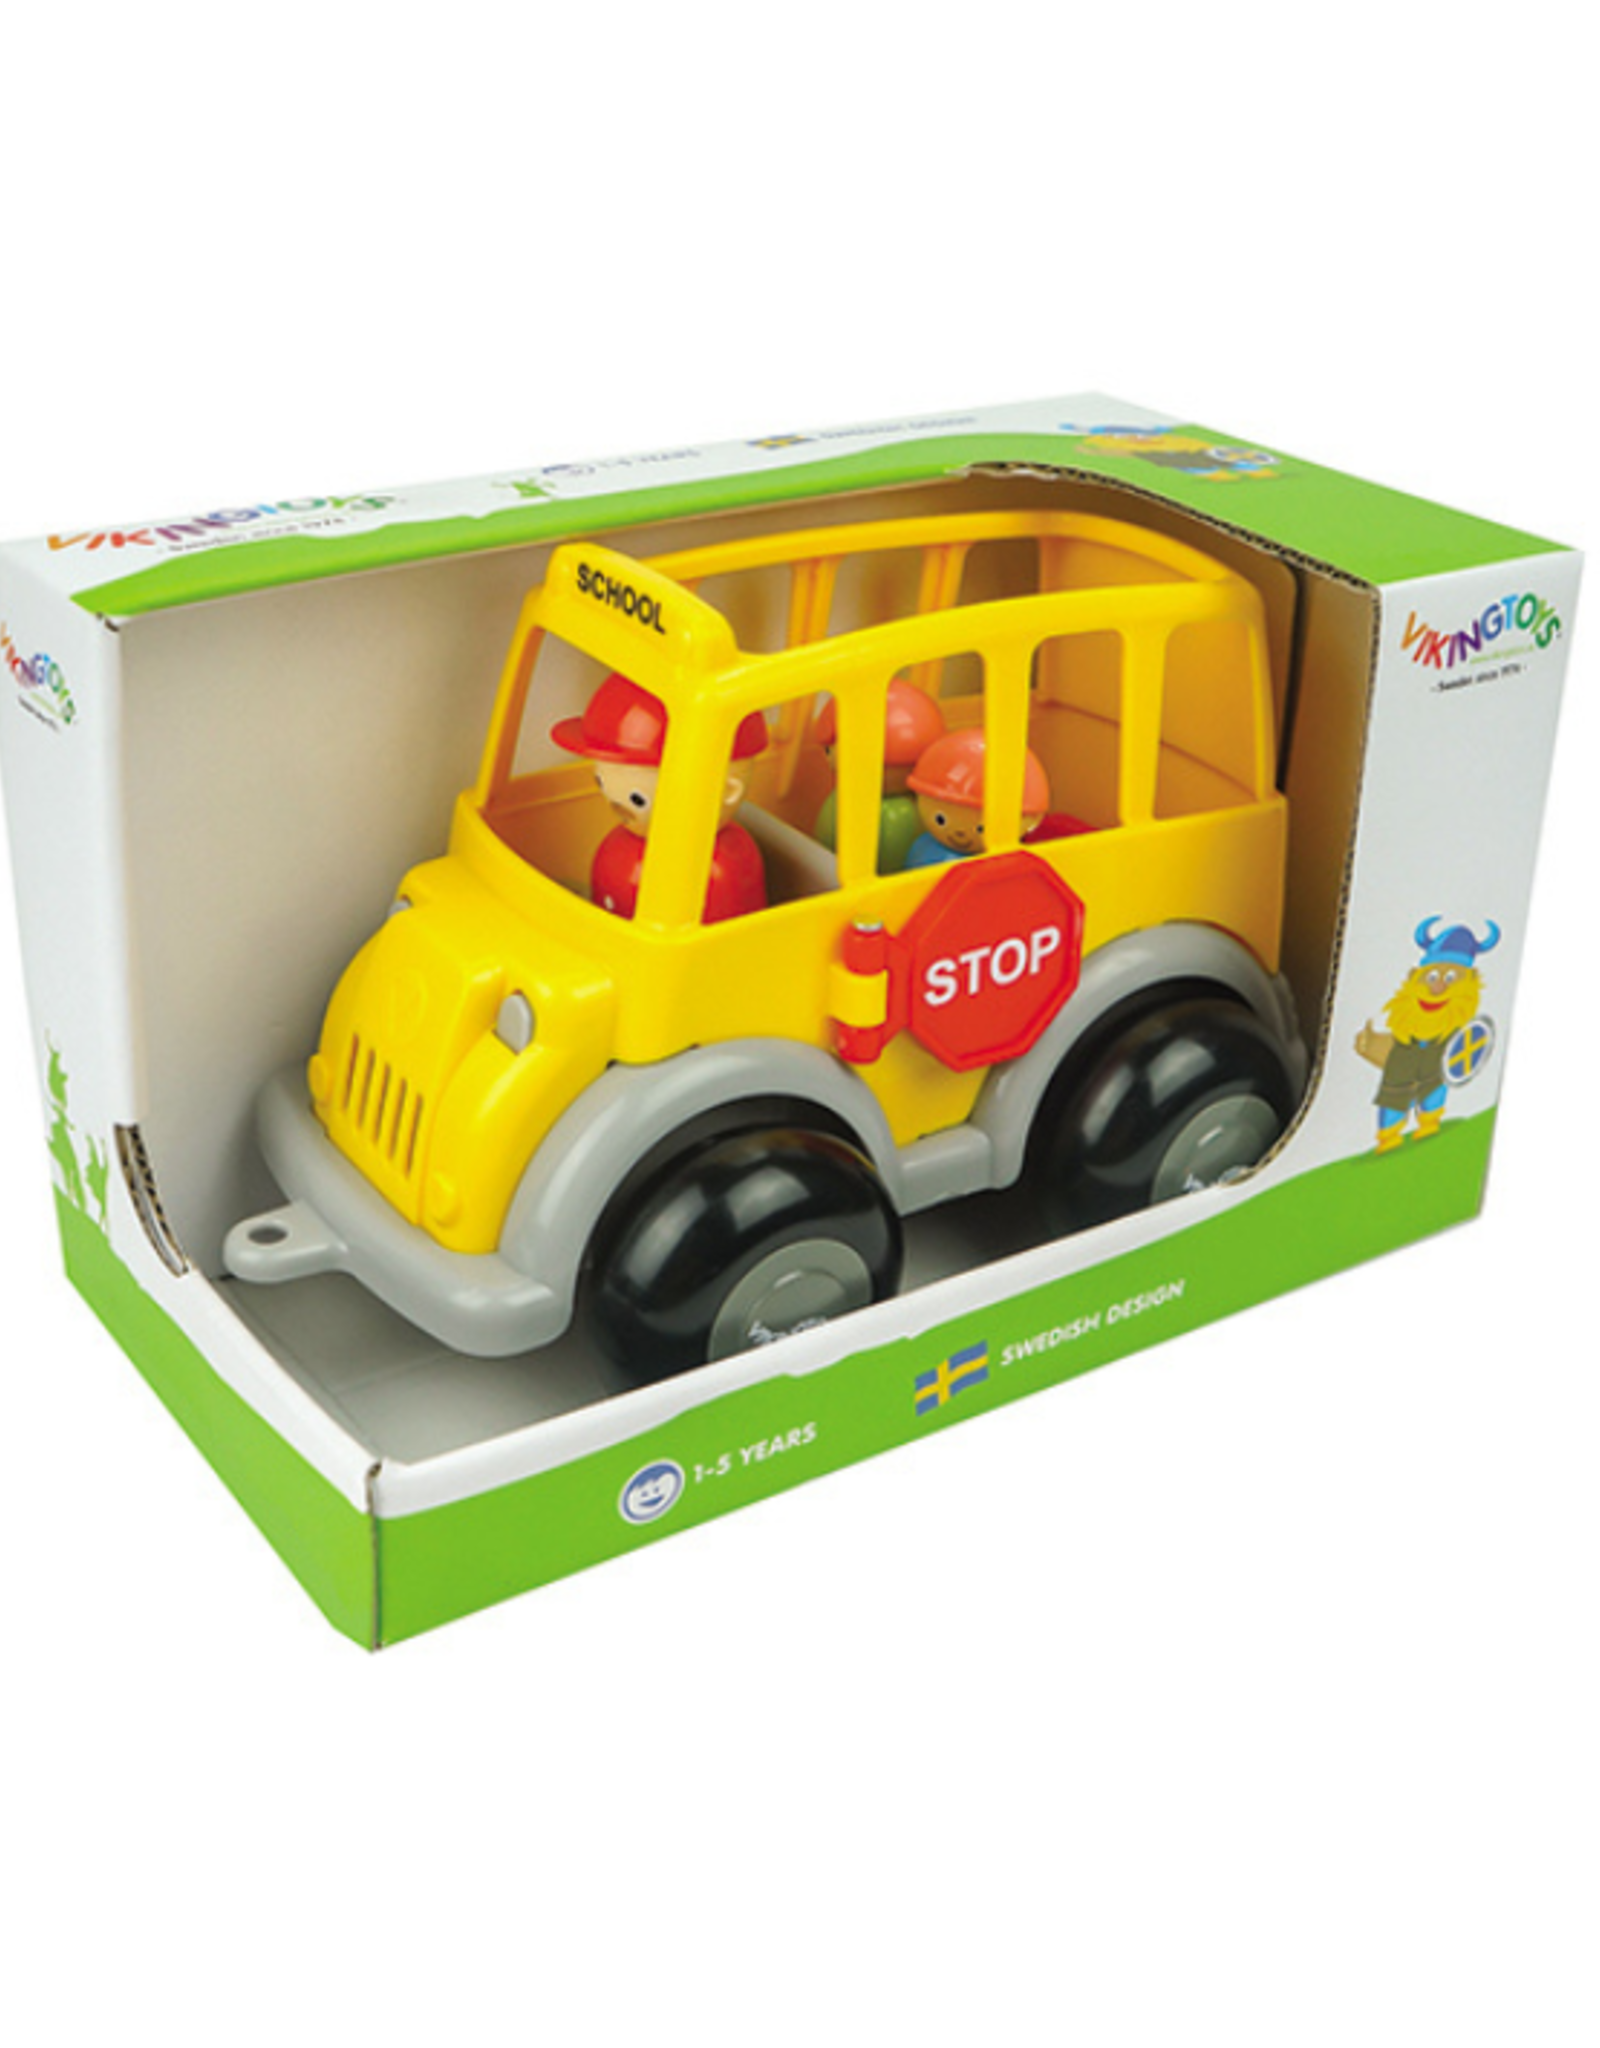 Vikingtoys Viking Toys - Midi School Bus